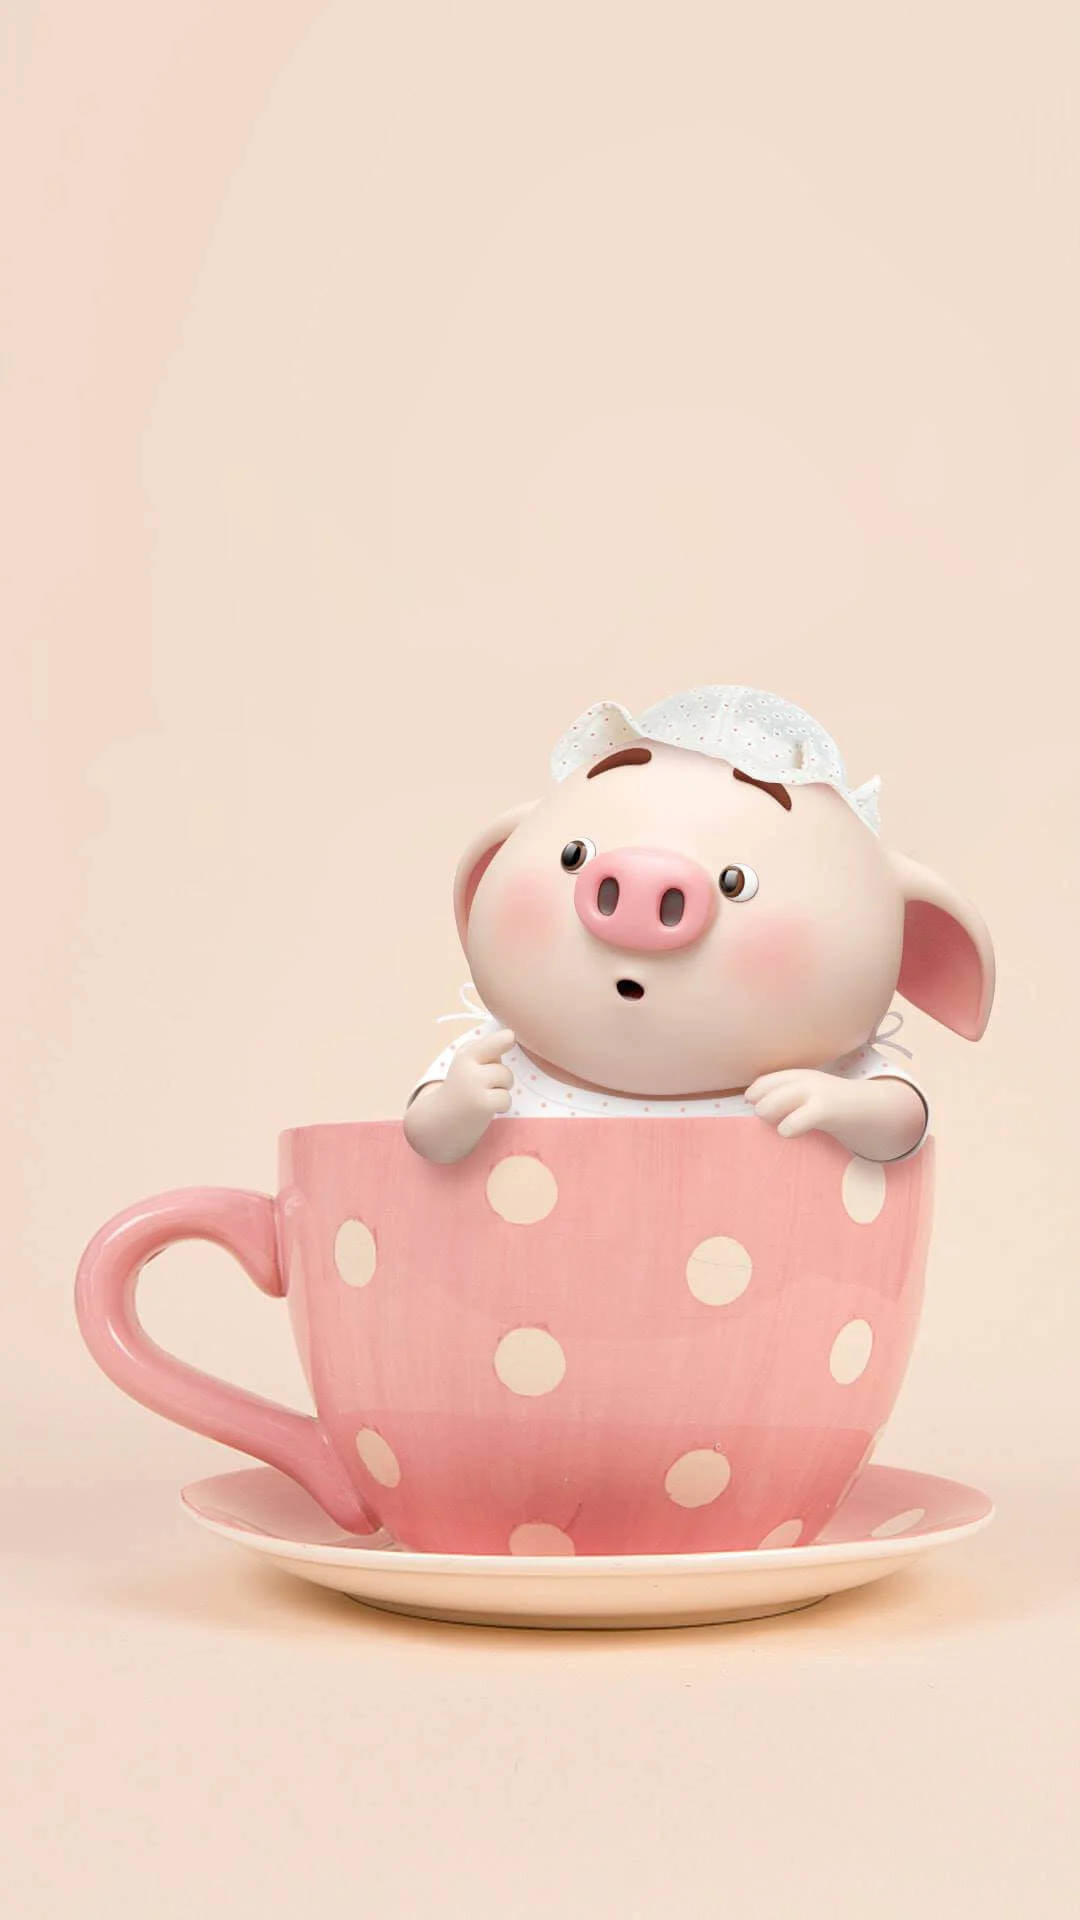 Cute Pig On A Teacup